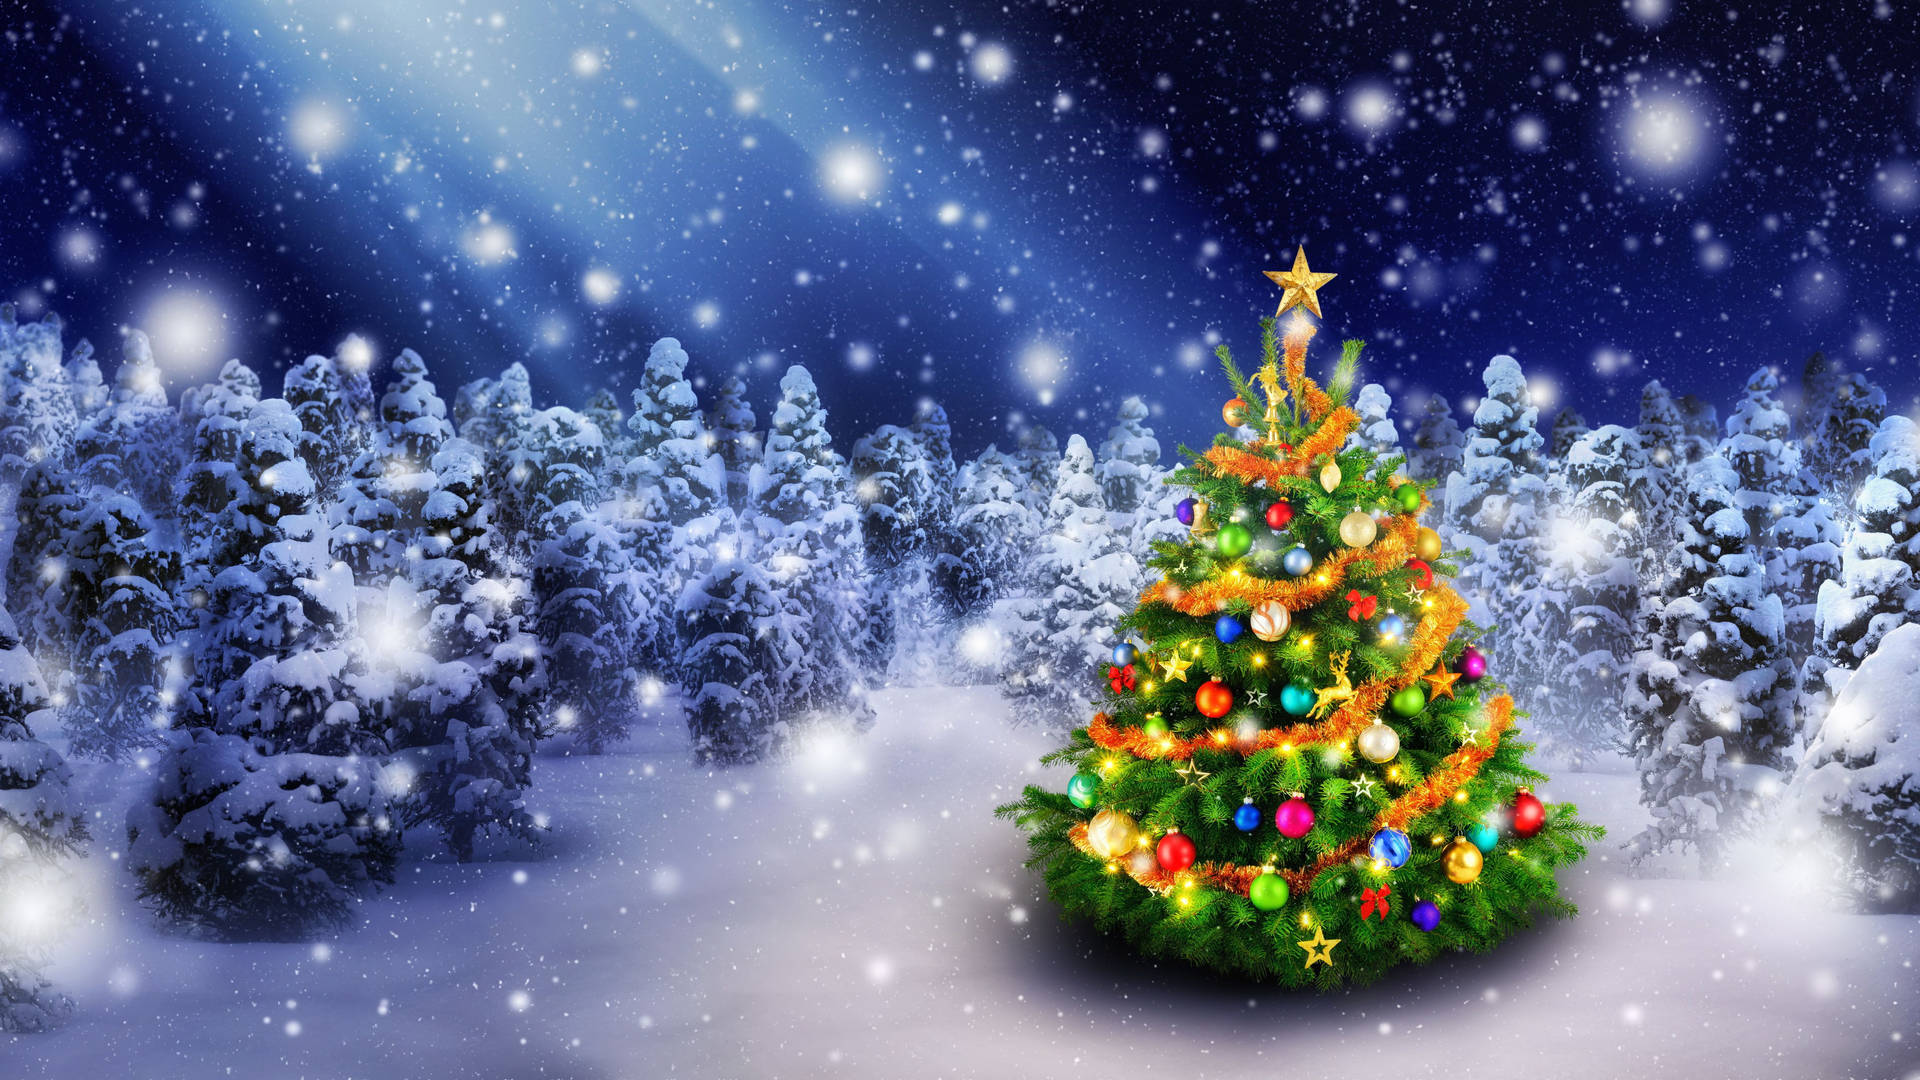 Christmas Tree 5325X2995 wallpaper